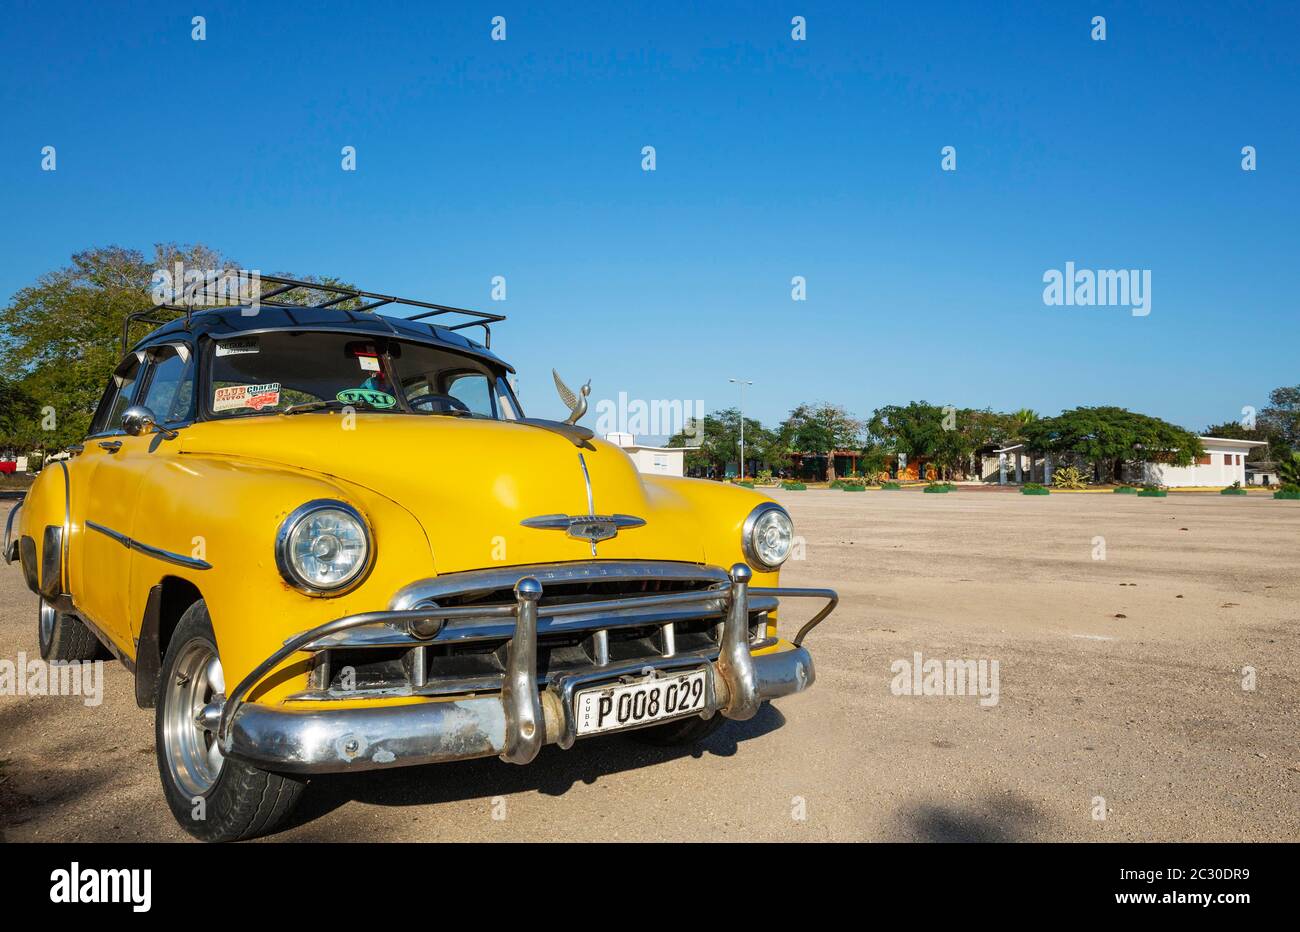 Chevrolet coche clásico de los años 50 utilizado como taxi, Playa Giron, Cuba Foto de stock